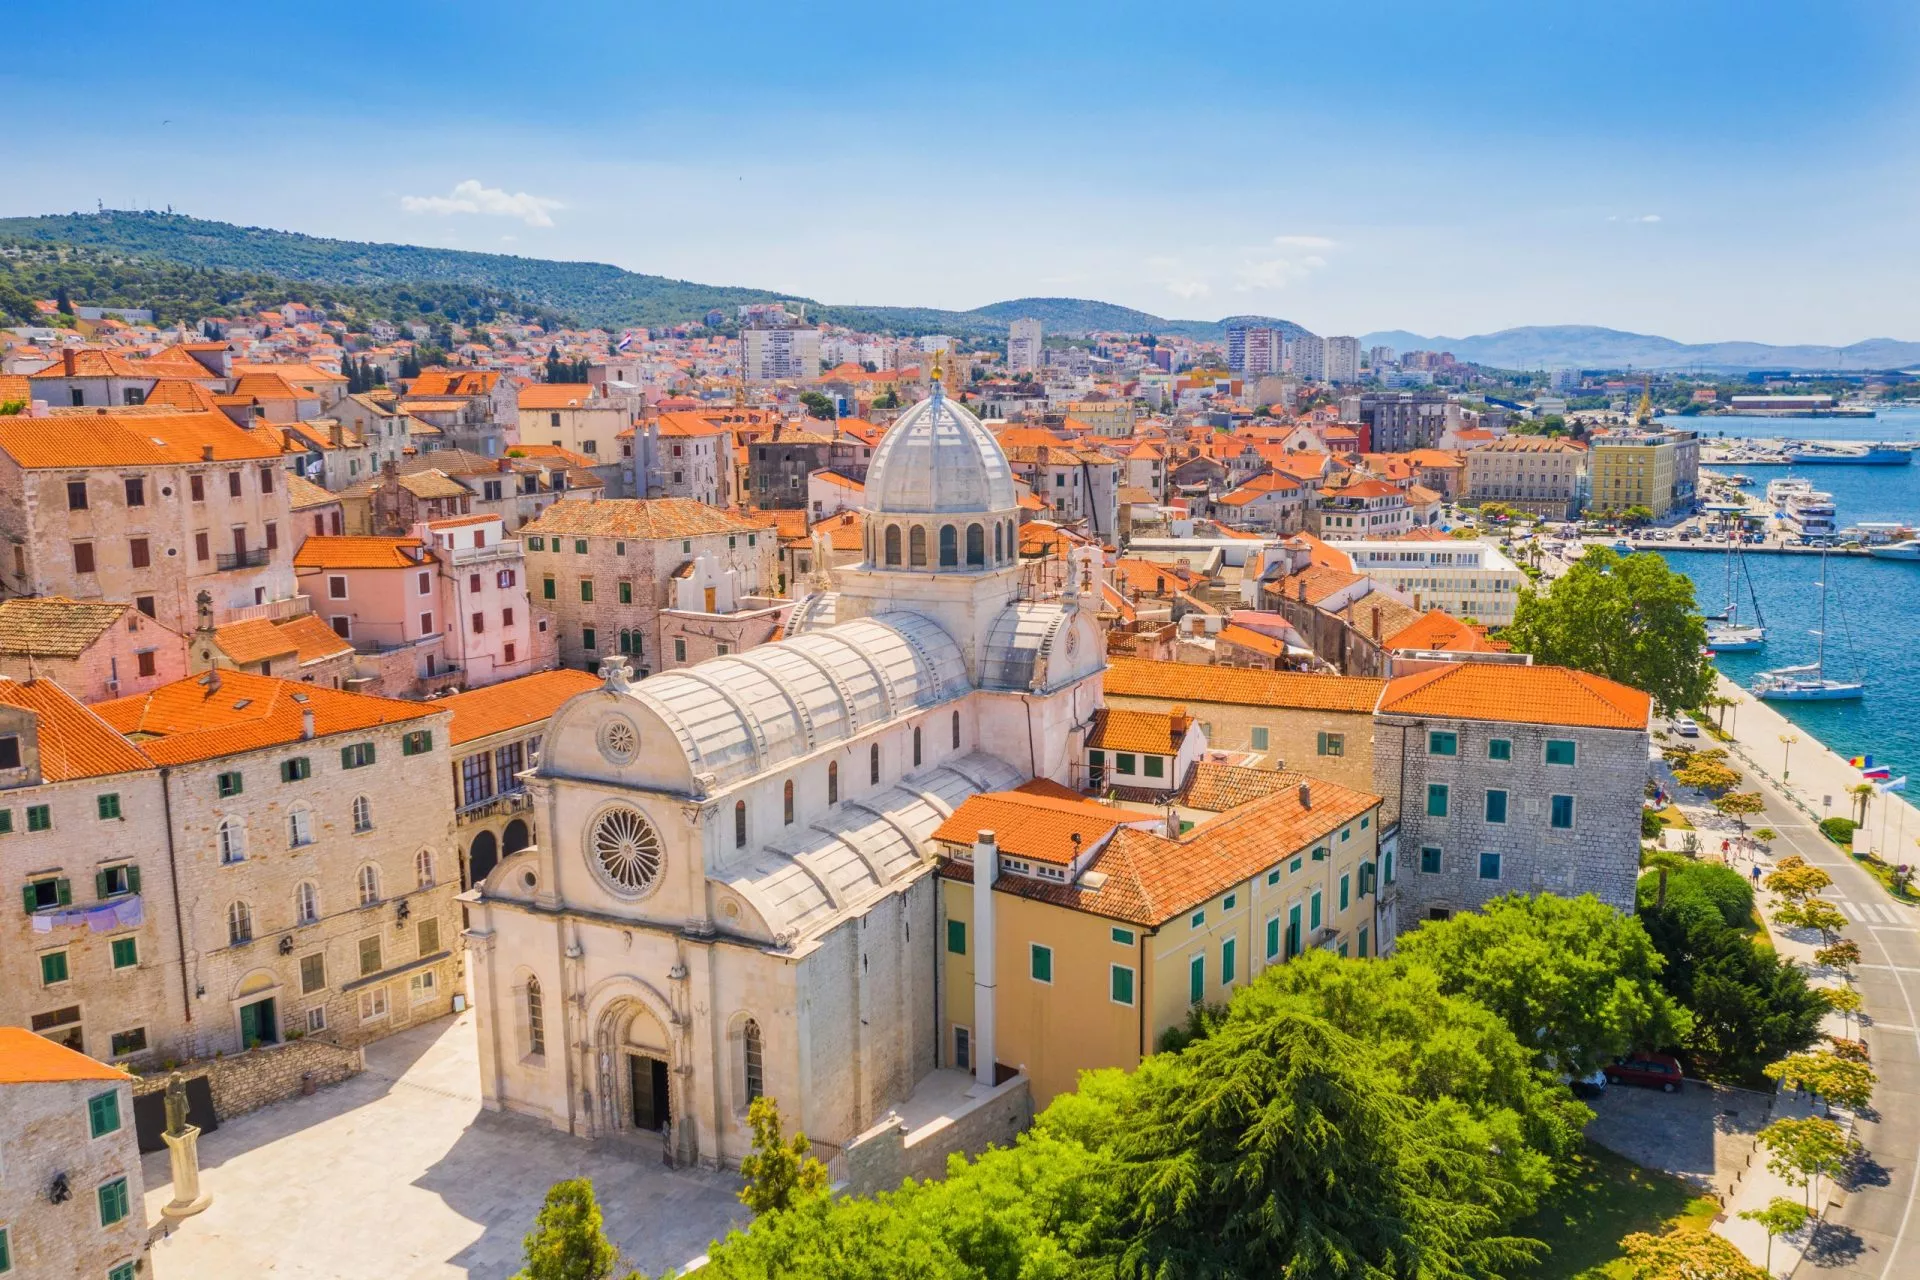 Croatie, ville de Sibenik, vue panoramique de la vieille ville et de la cathédrale Saint-Jacques, le plus important monument architectural de la Renaissance en Croatie, patrimoine mondial de l'UNESCO.